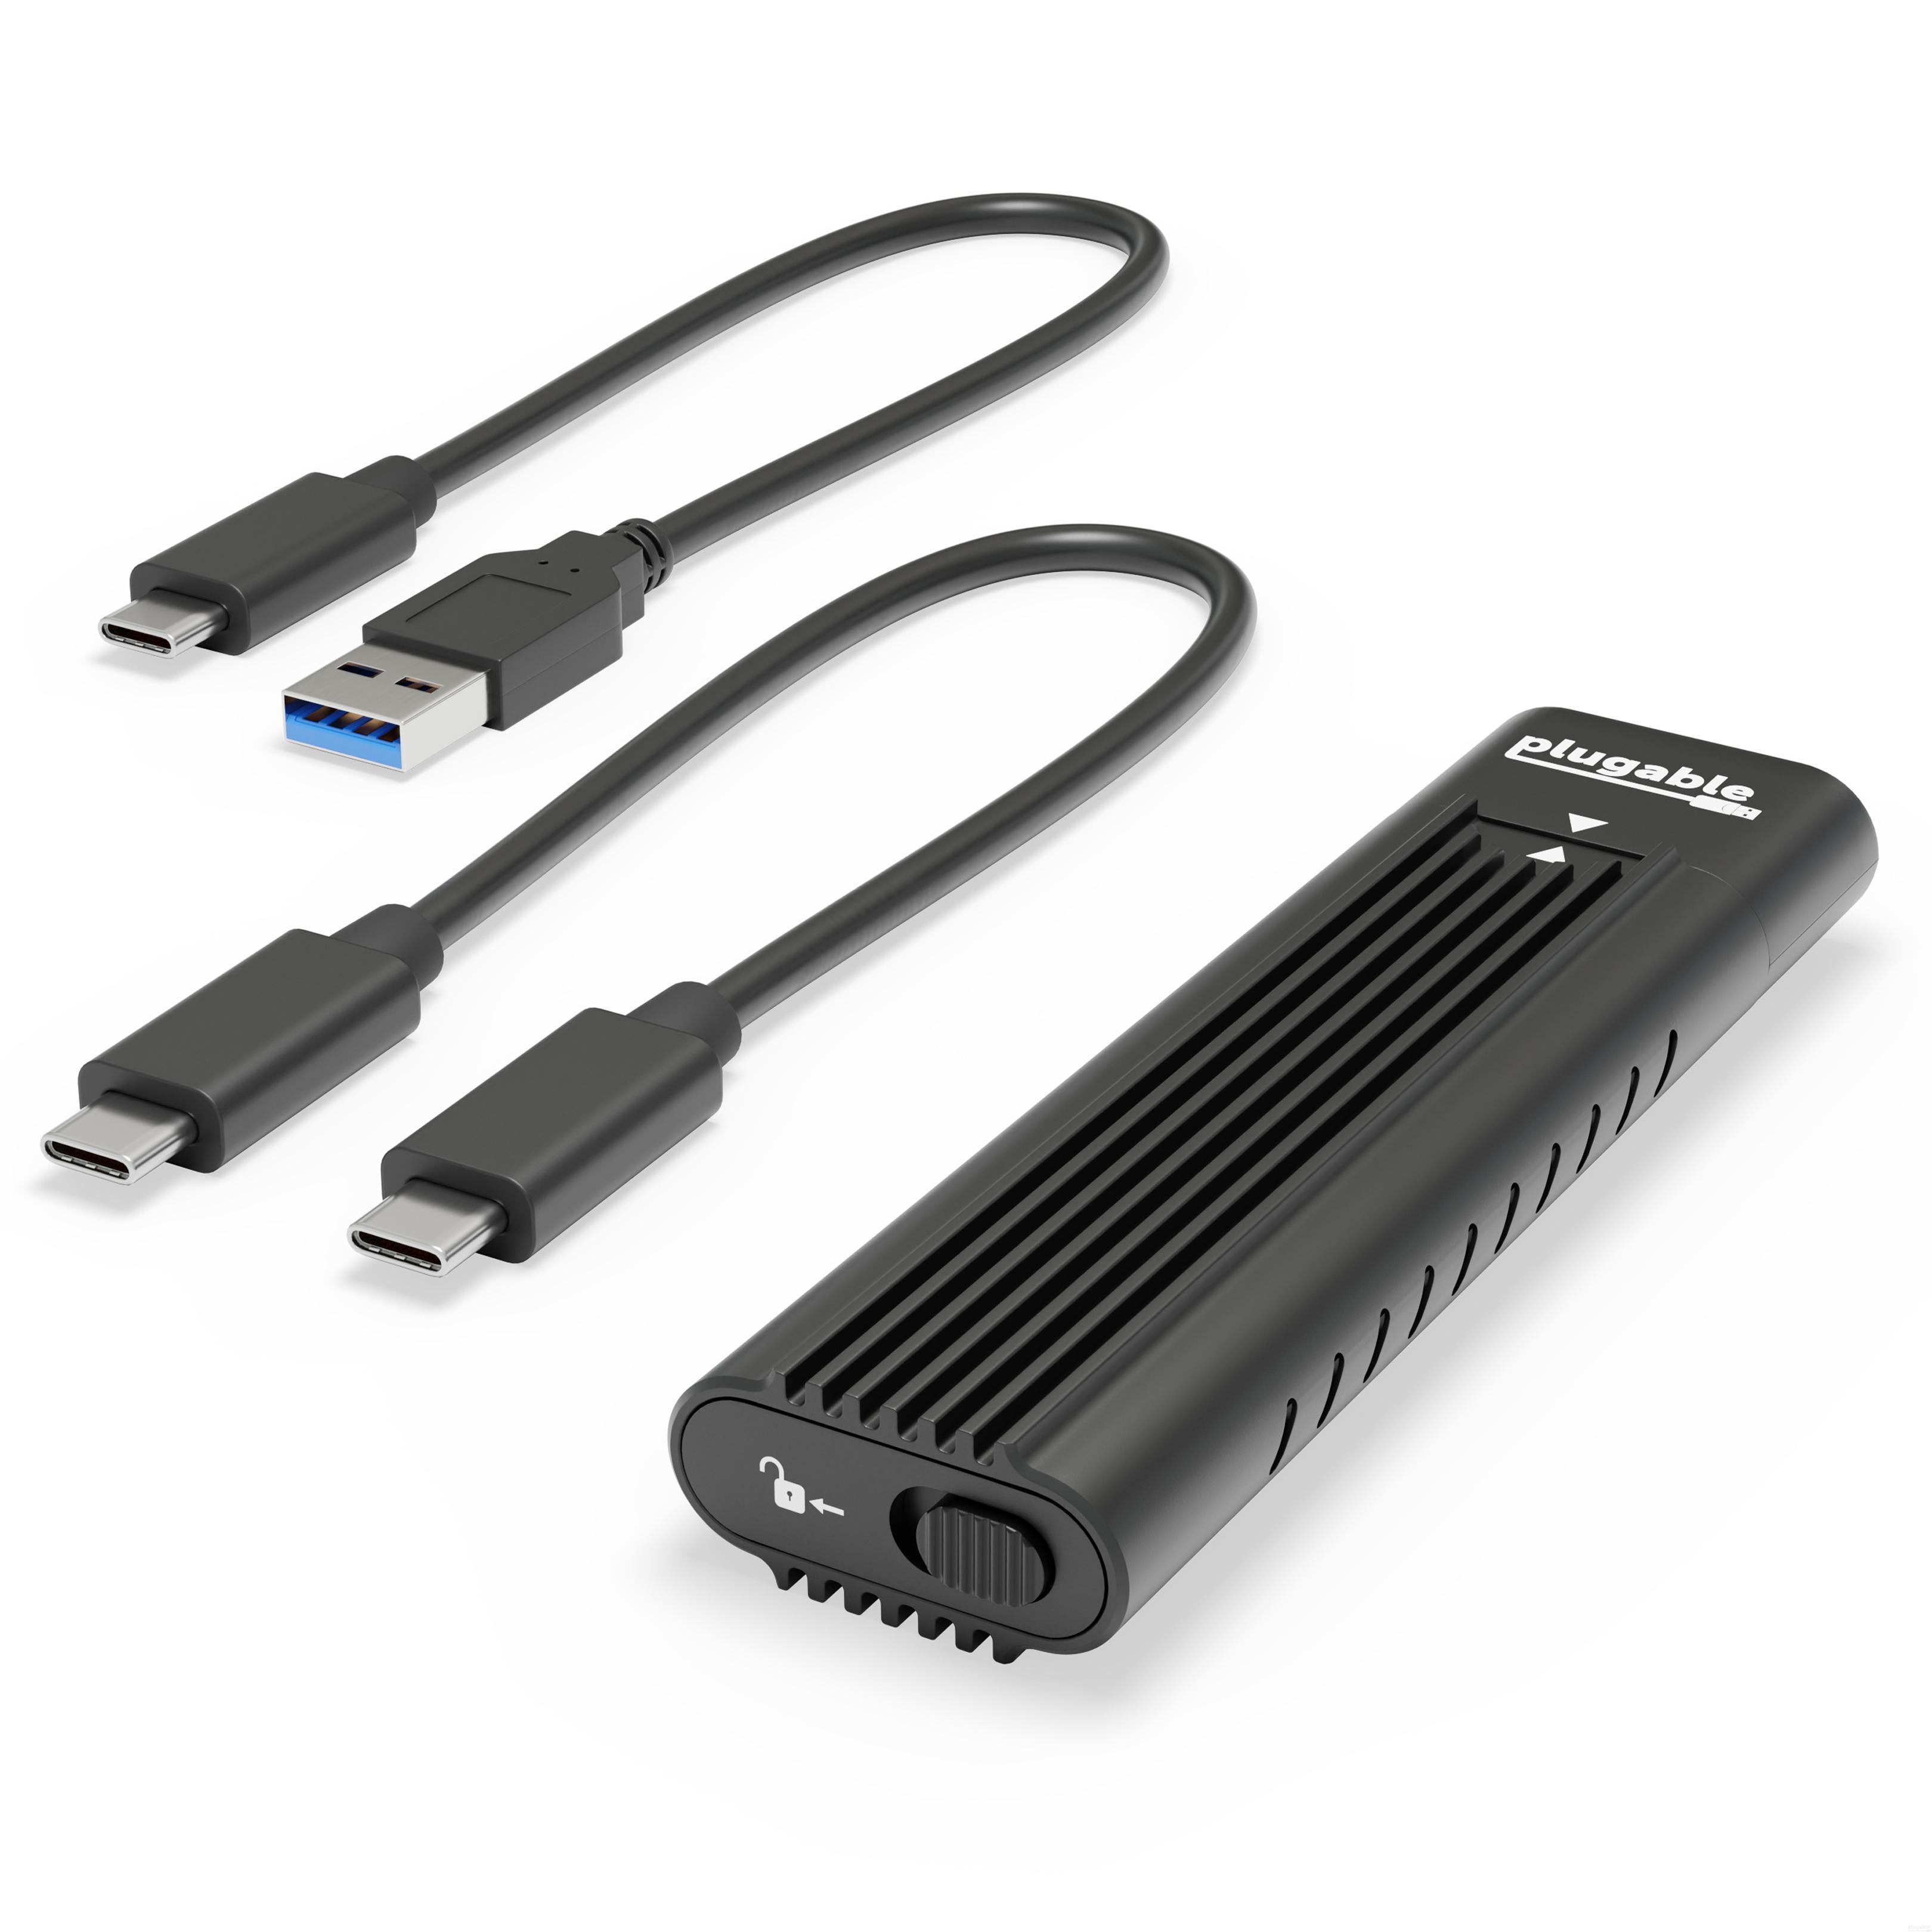 Plugable USB 3.1 Gen 2 Tool-free NVMe Enclosure – Plugable